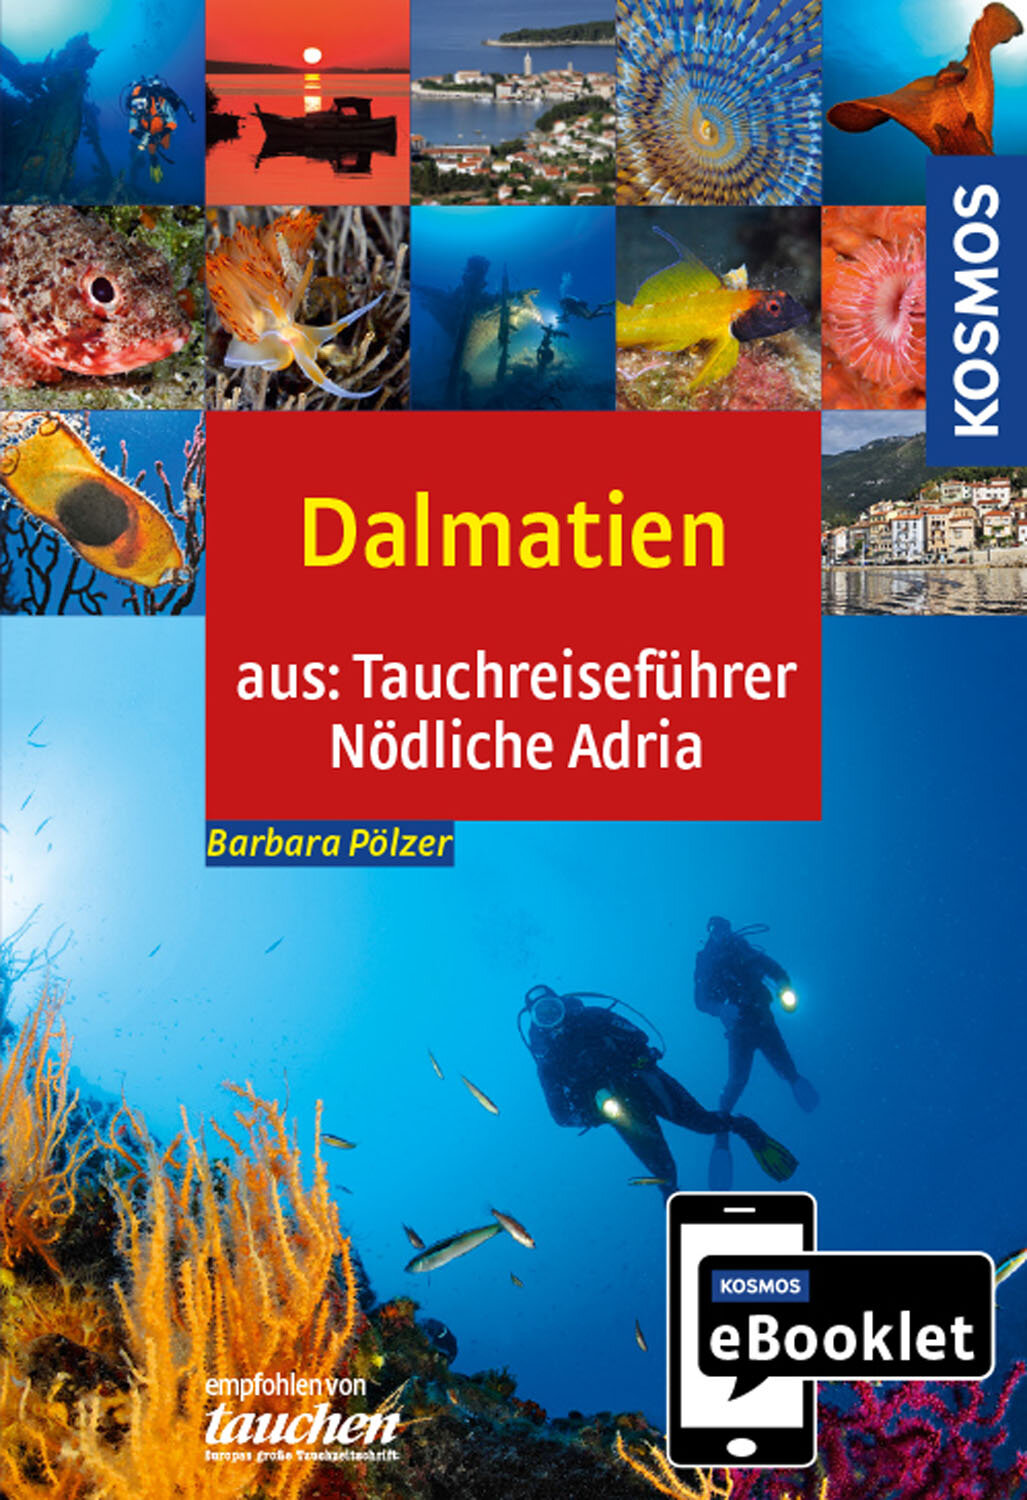 KOSMOS eBooklet: Tauchreiseführer Dalmatien